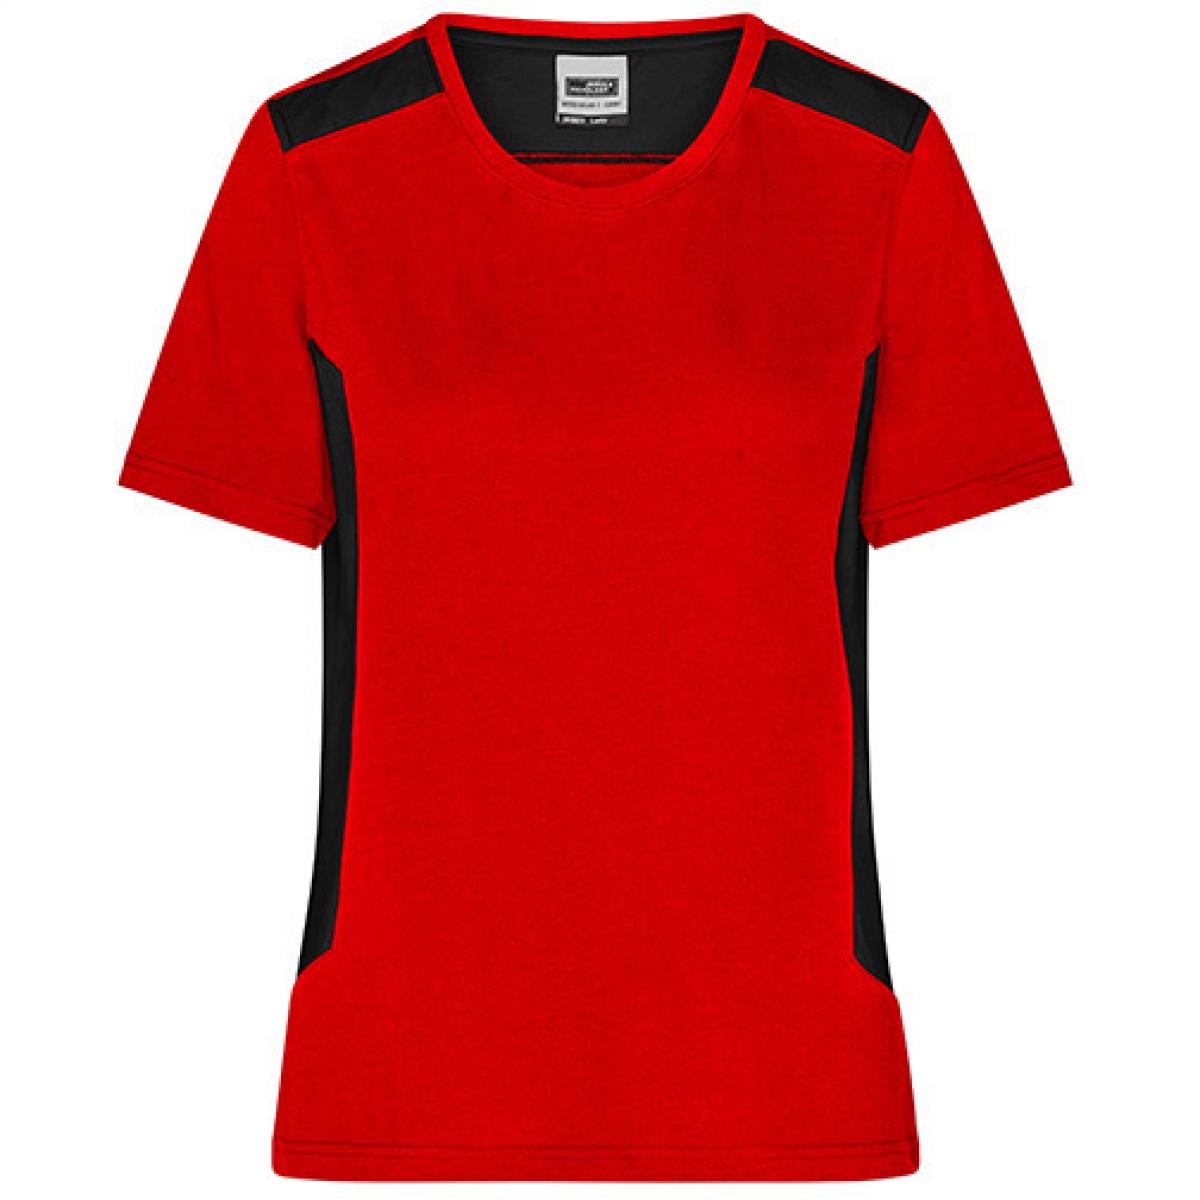 Hersteller: James+Nicholson Herstellernummer: JN1823 Artikelbezeichnung: Damen T, Ladies‘ Workwear T-Shirt -STRONG- Waschbar bis 60 ° Farbe: Red/Black